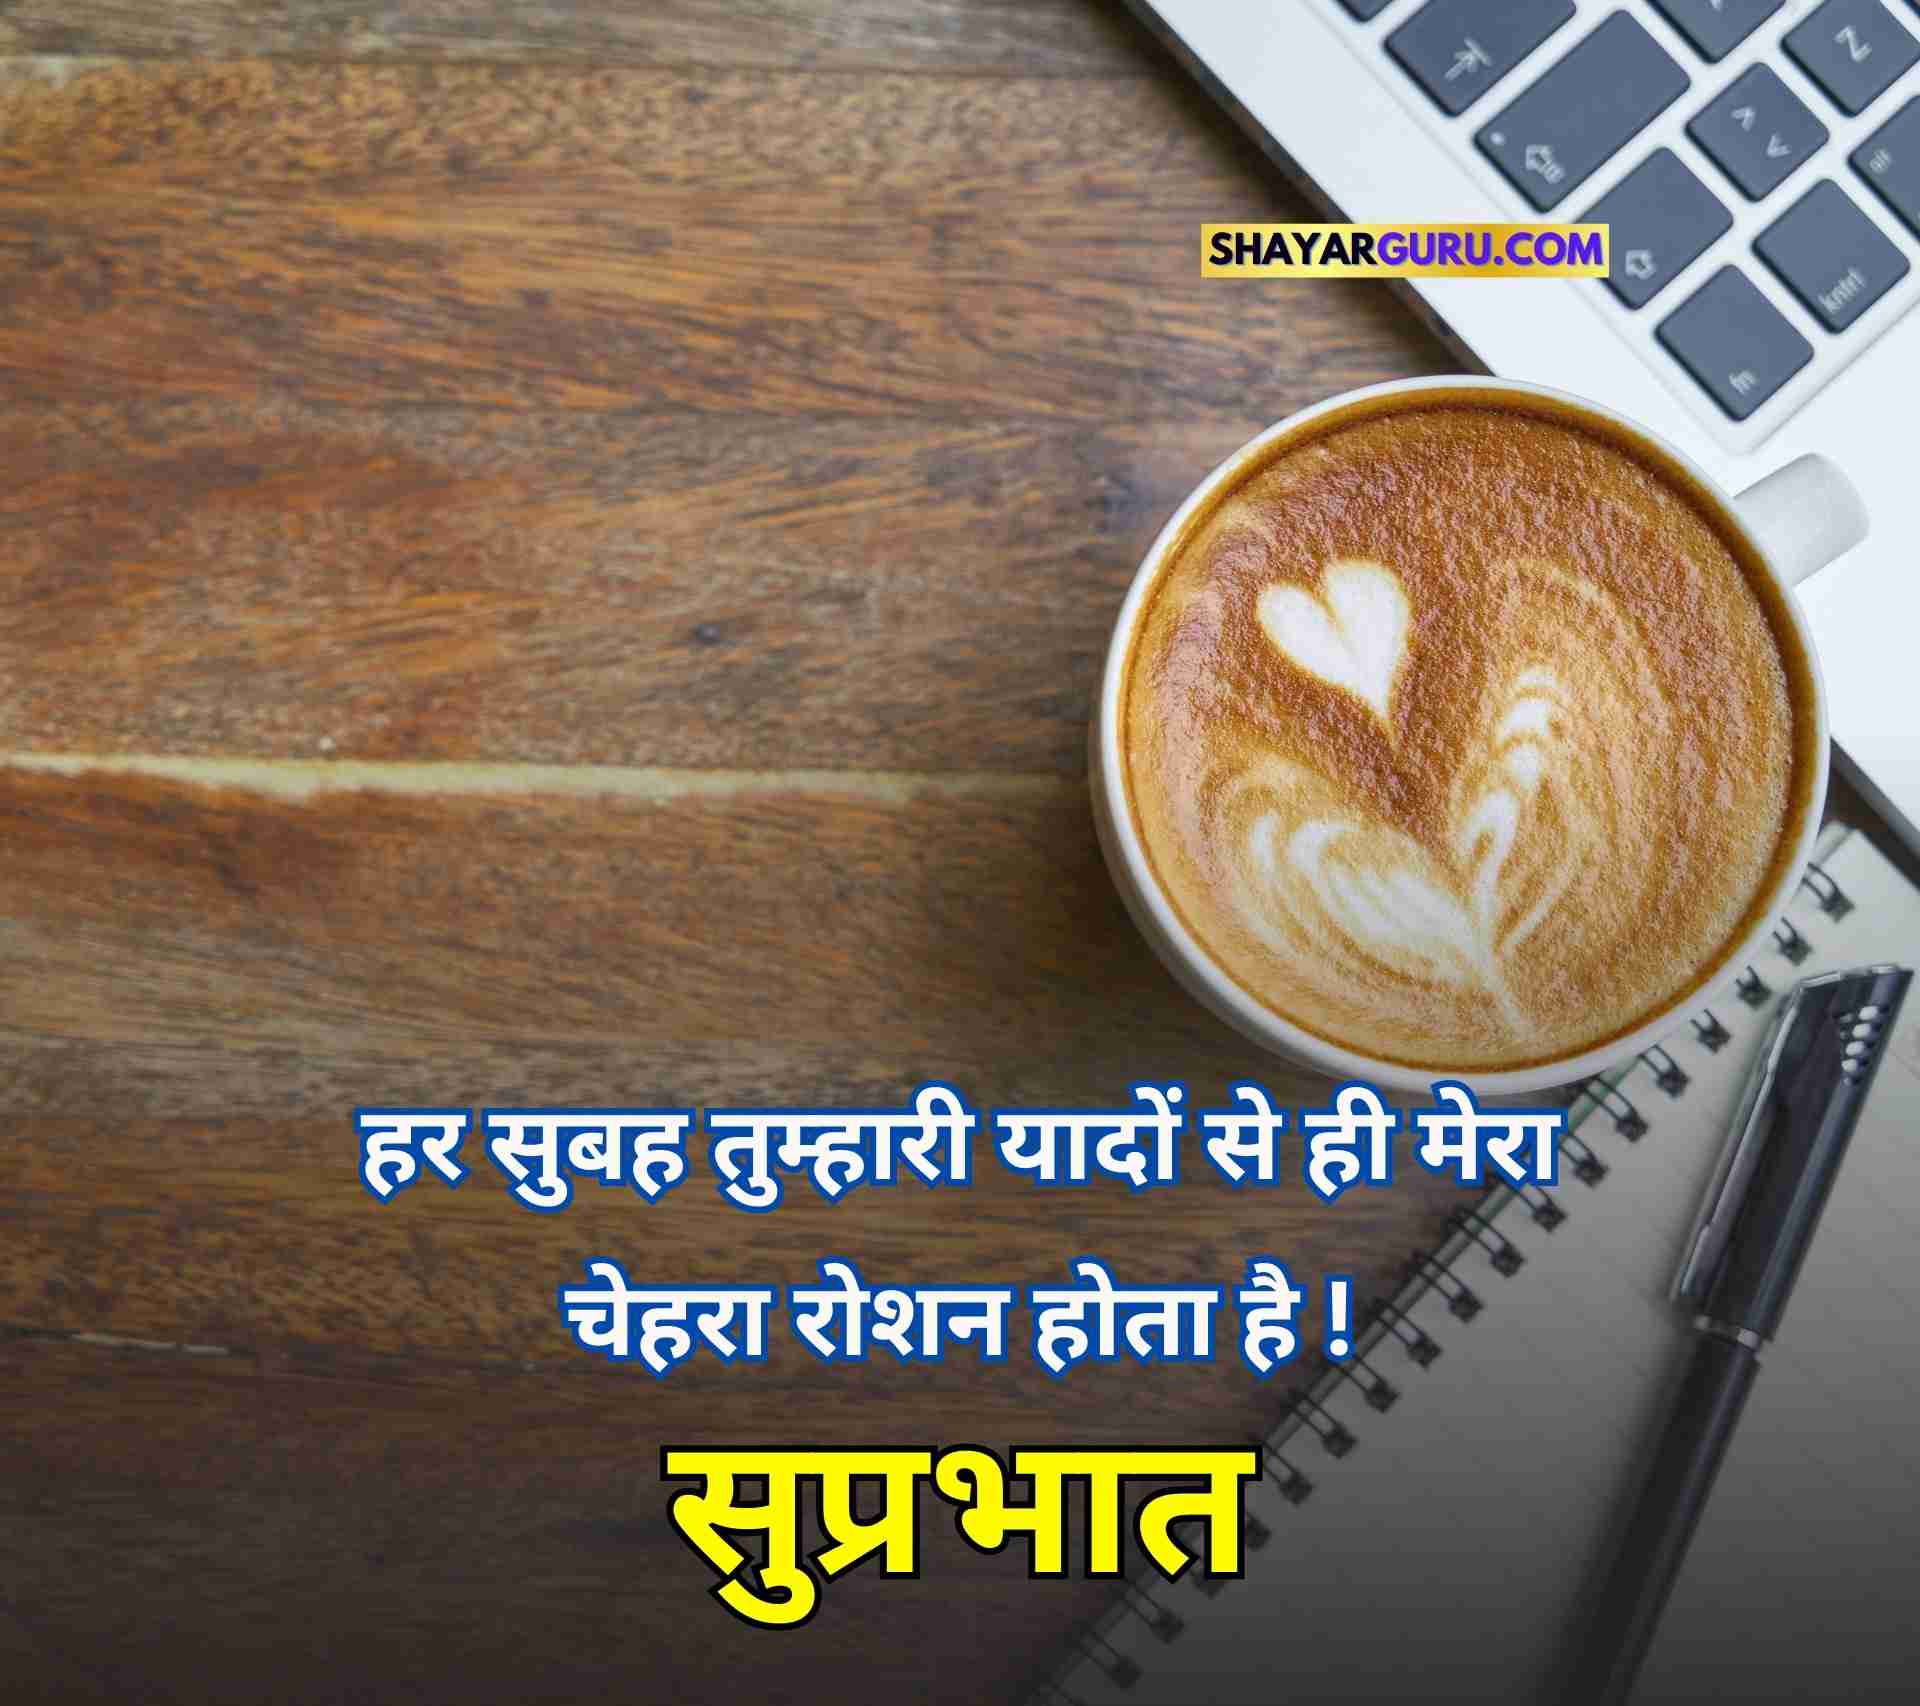 Good Morning Quotes Hindi Images